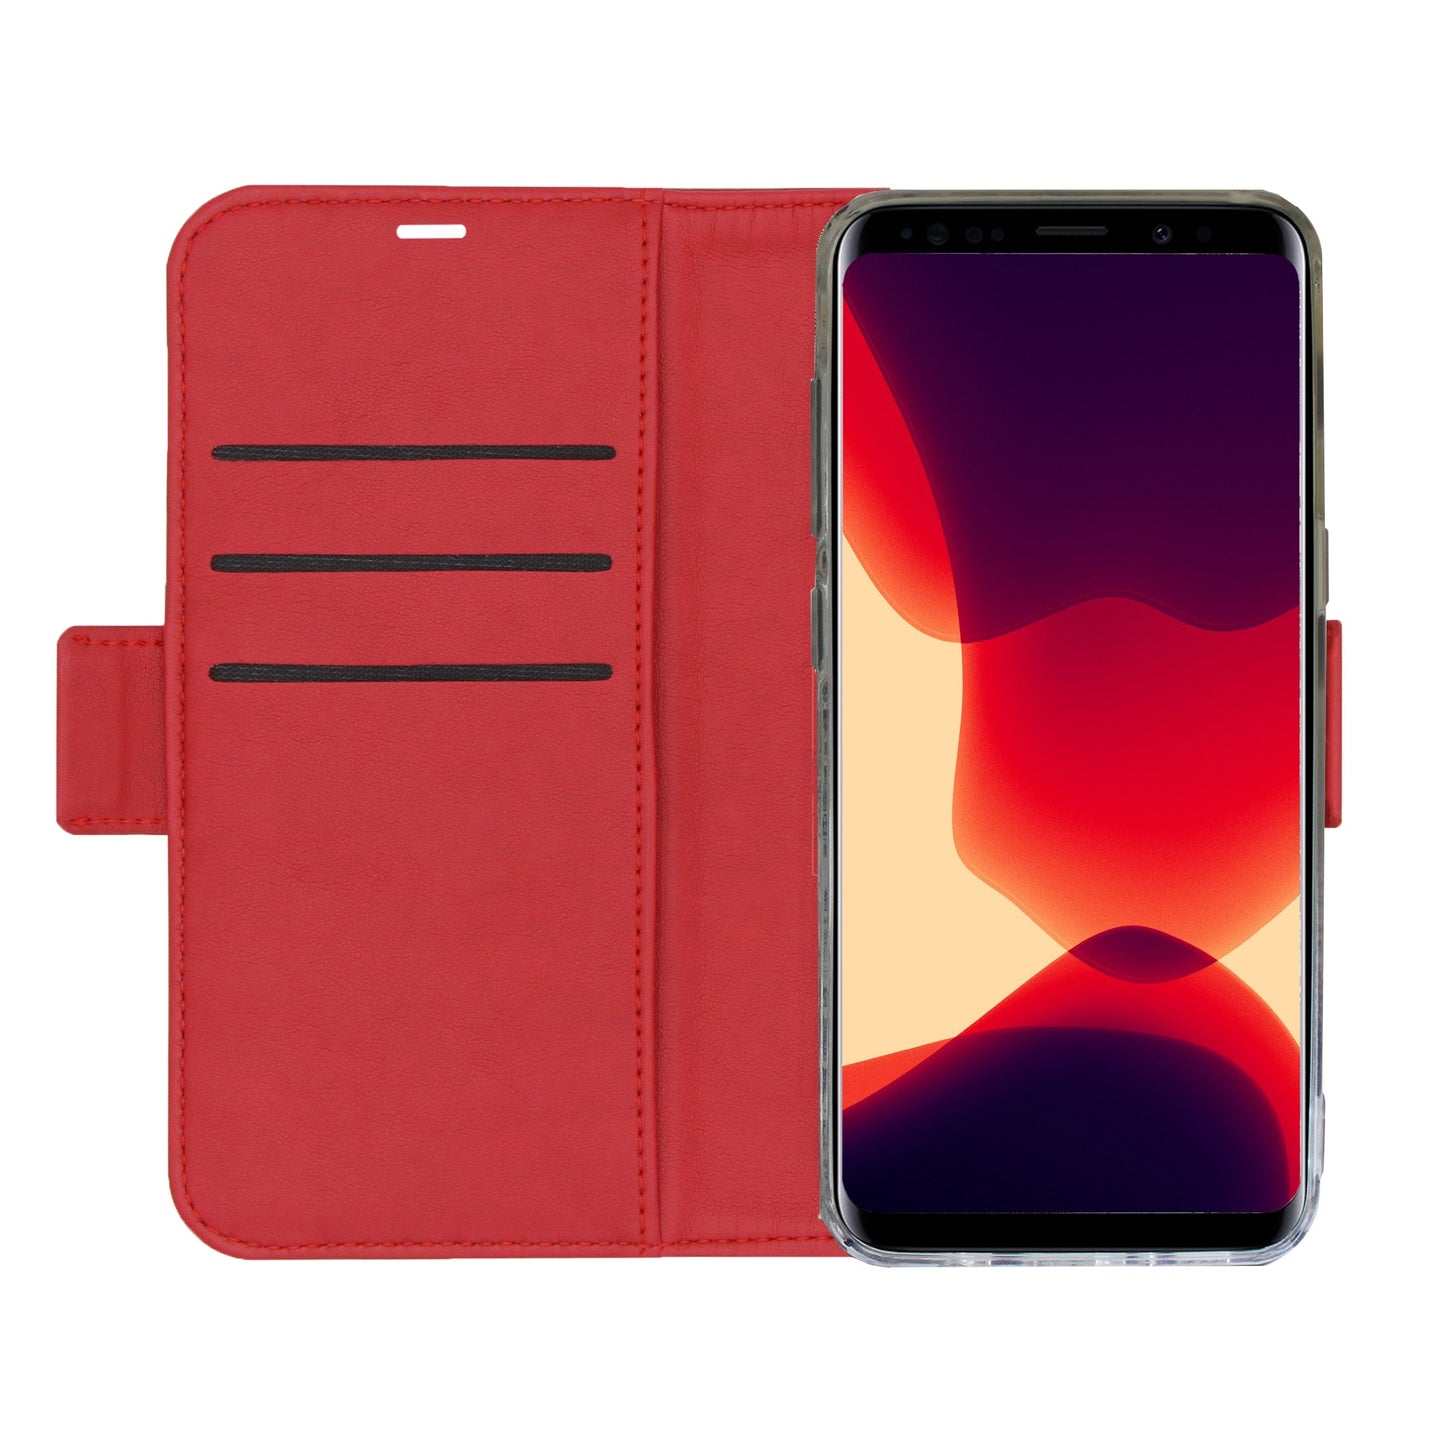 Uni Rot Victor Case für Samsung Galaxy S9